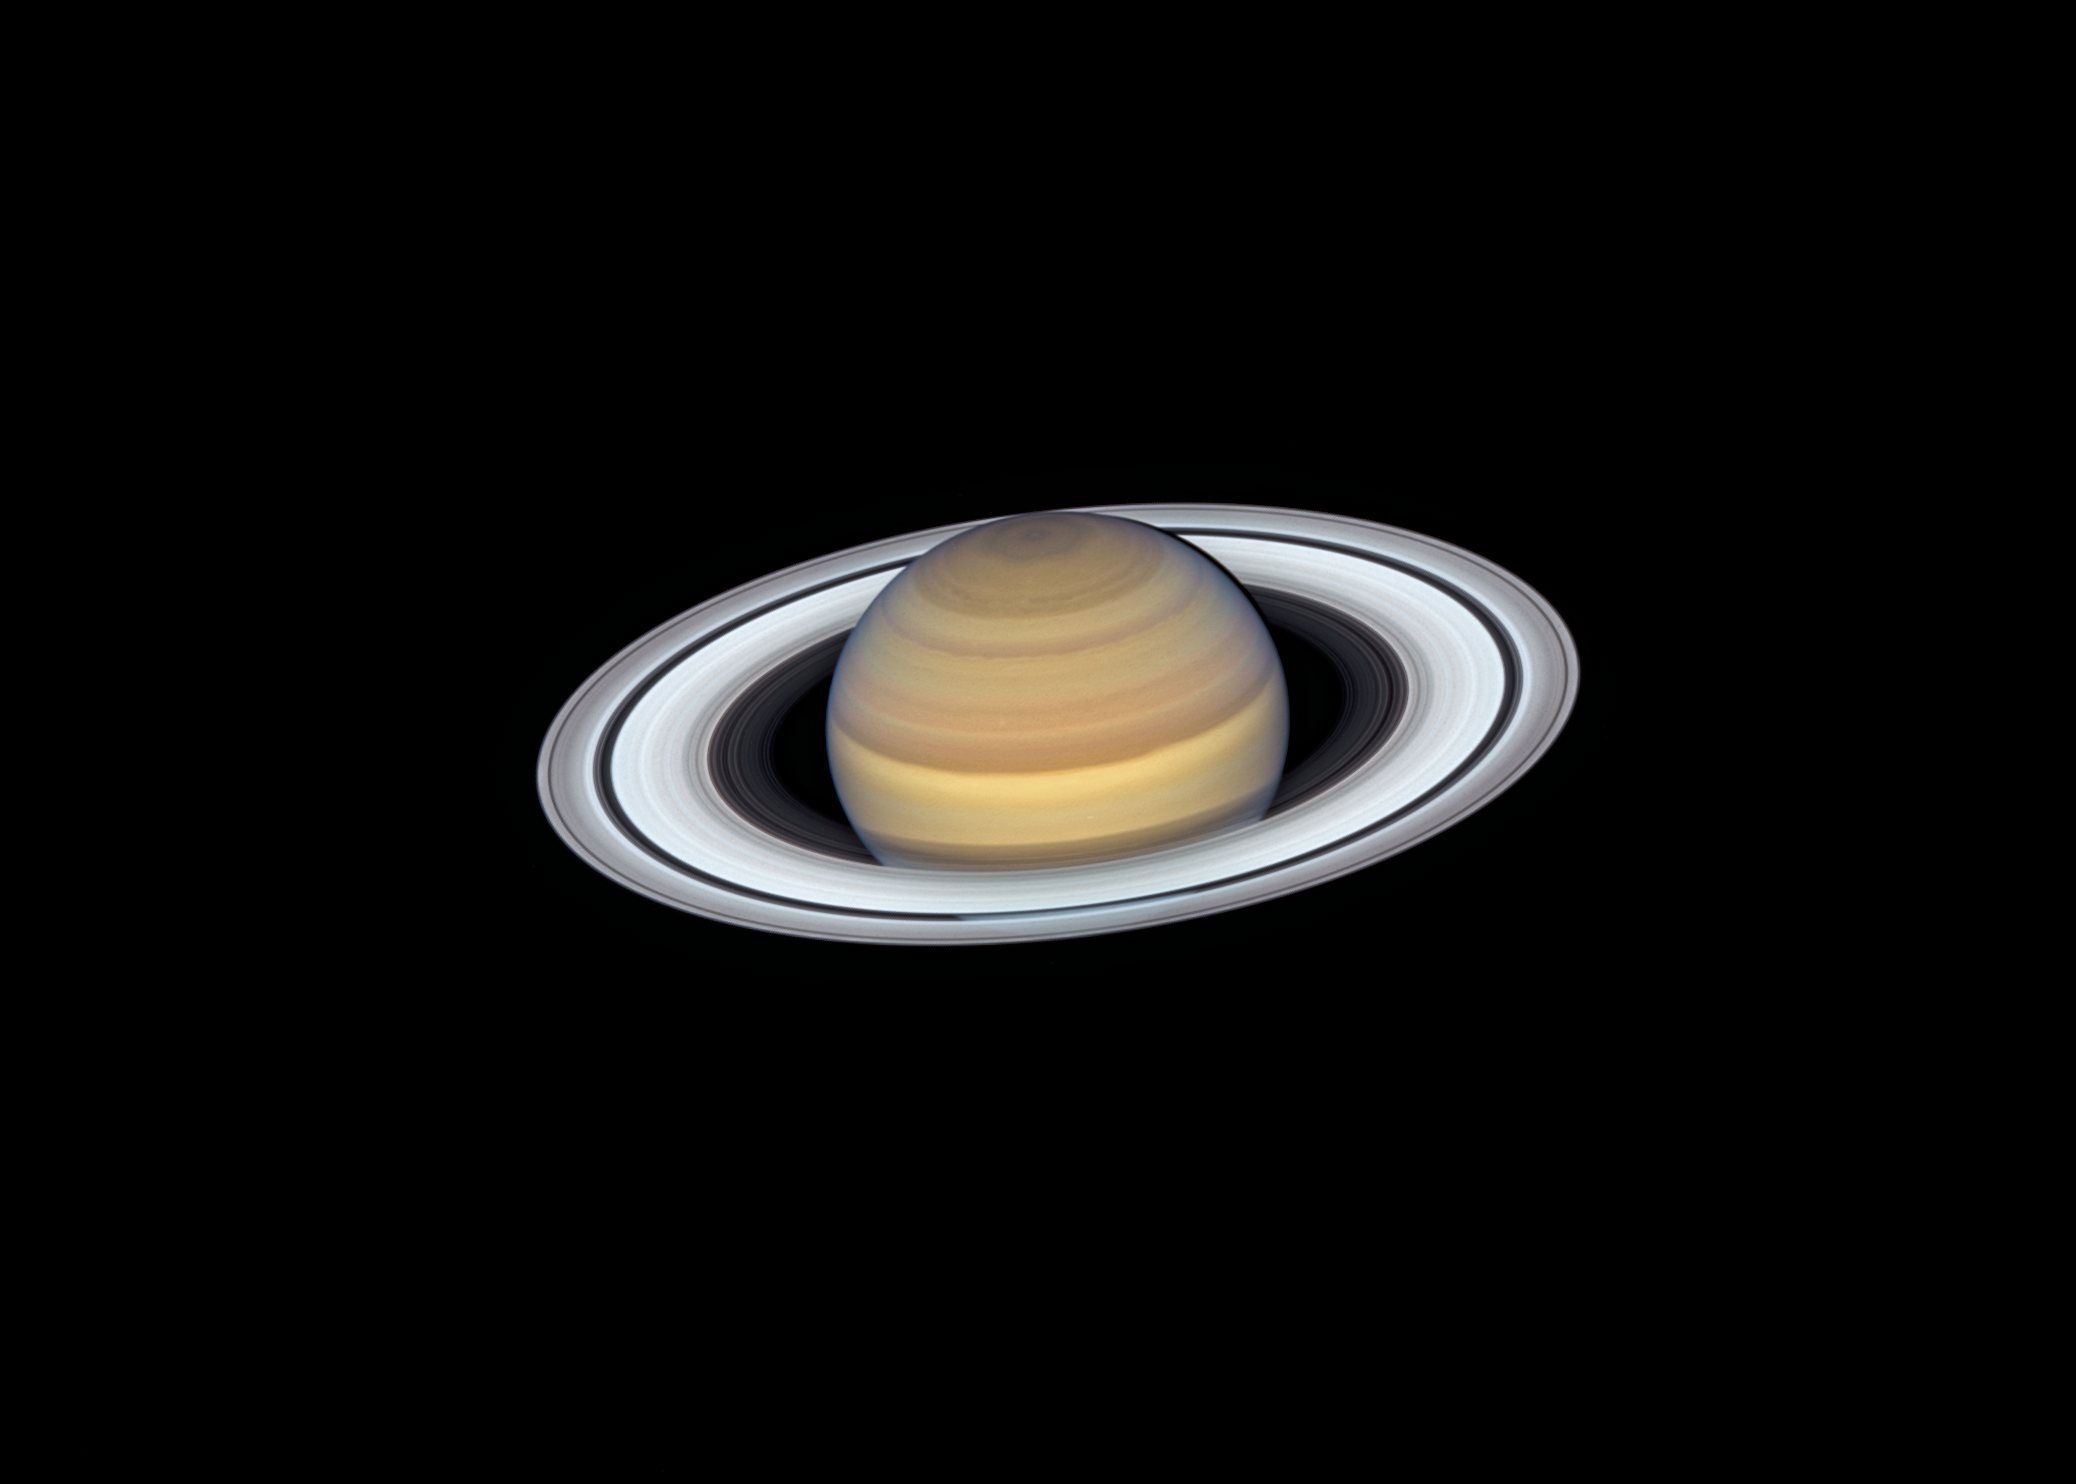 Saturn Hubble Space Telescope Image